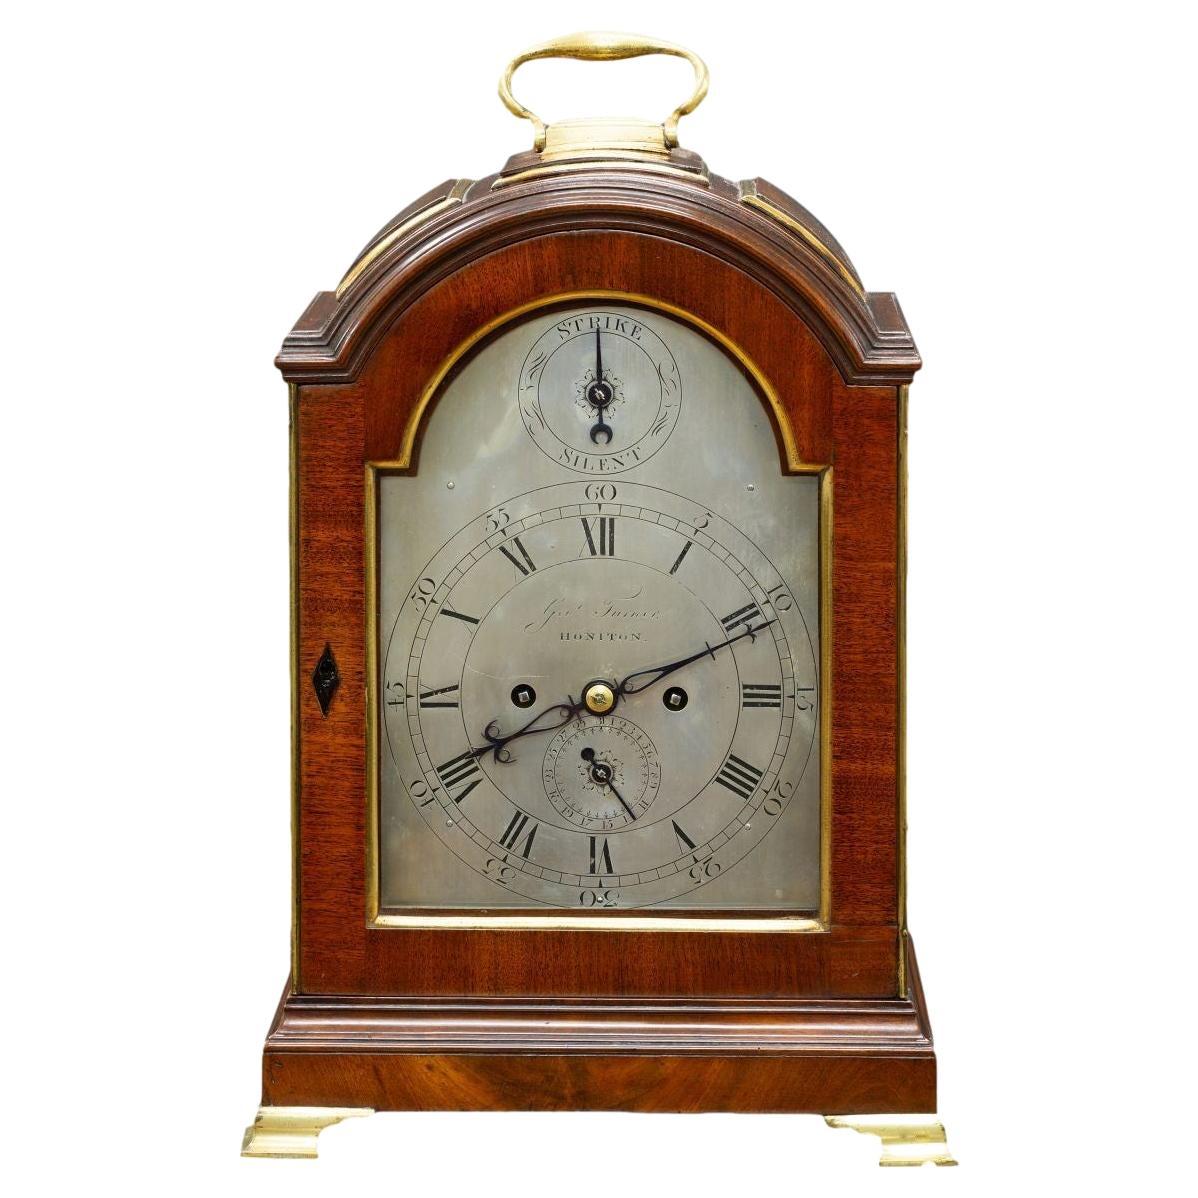 Horloge seau à verge en acajou de style géorgien par George Turner, Honiton